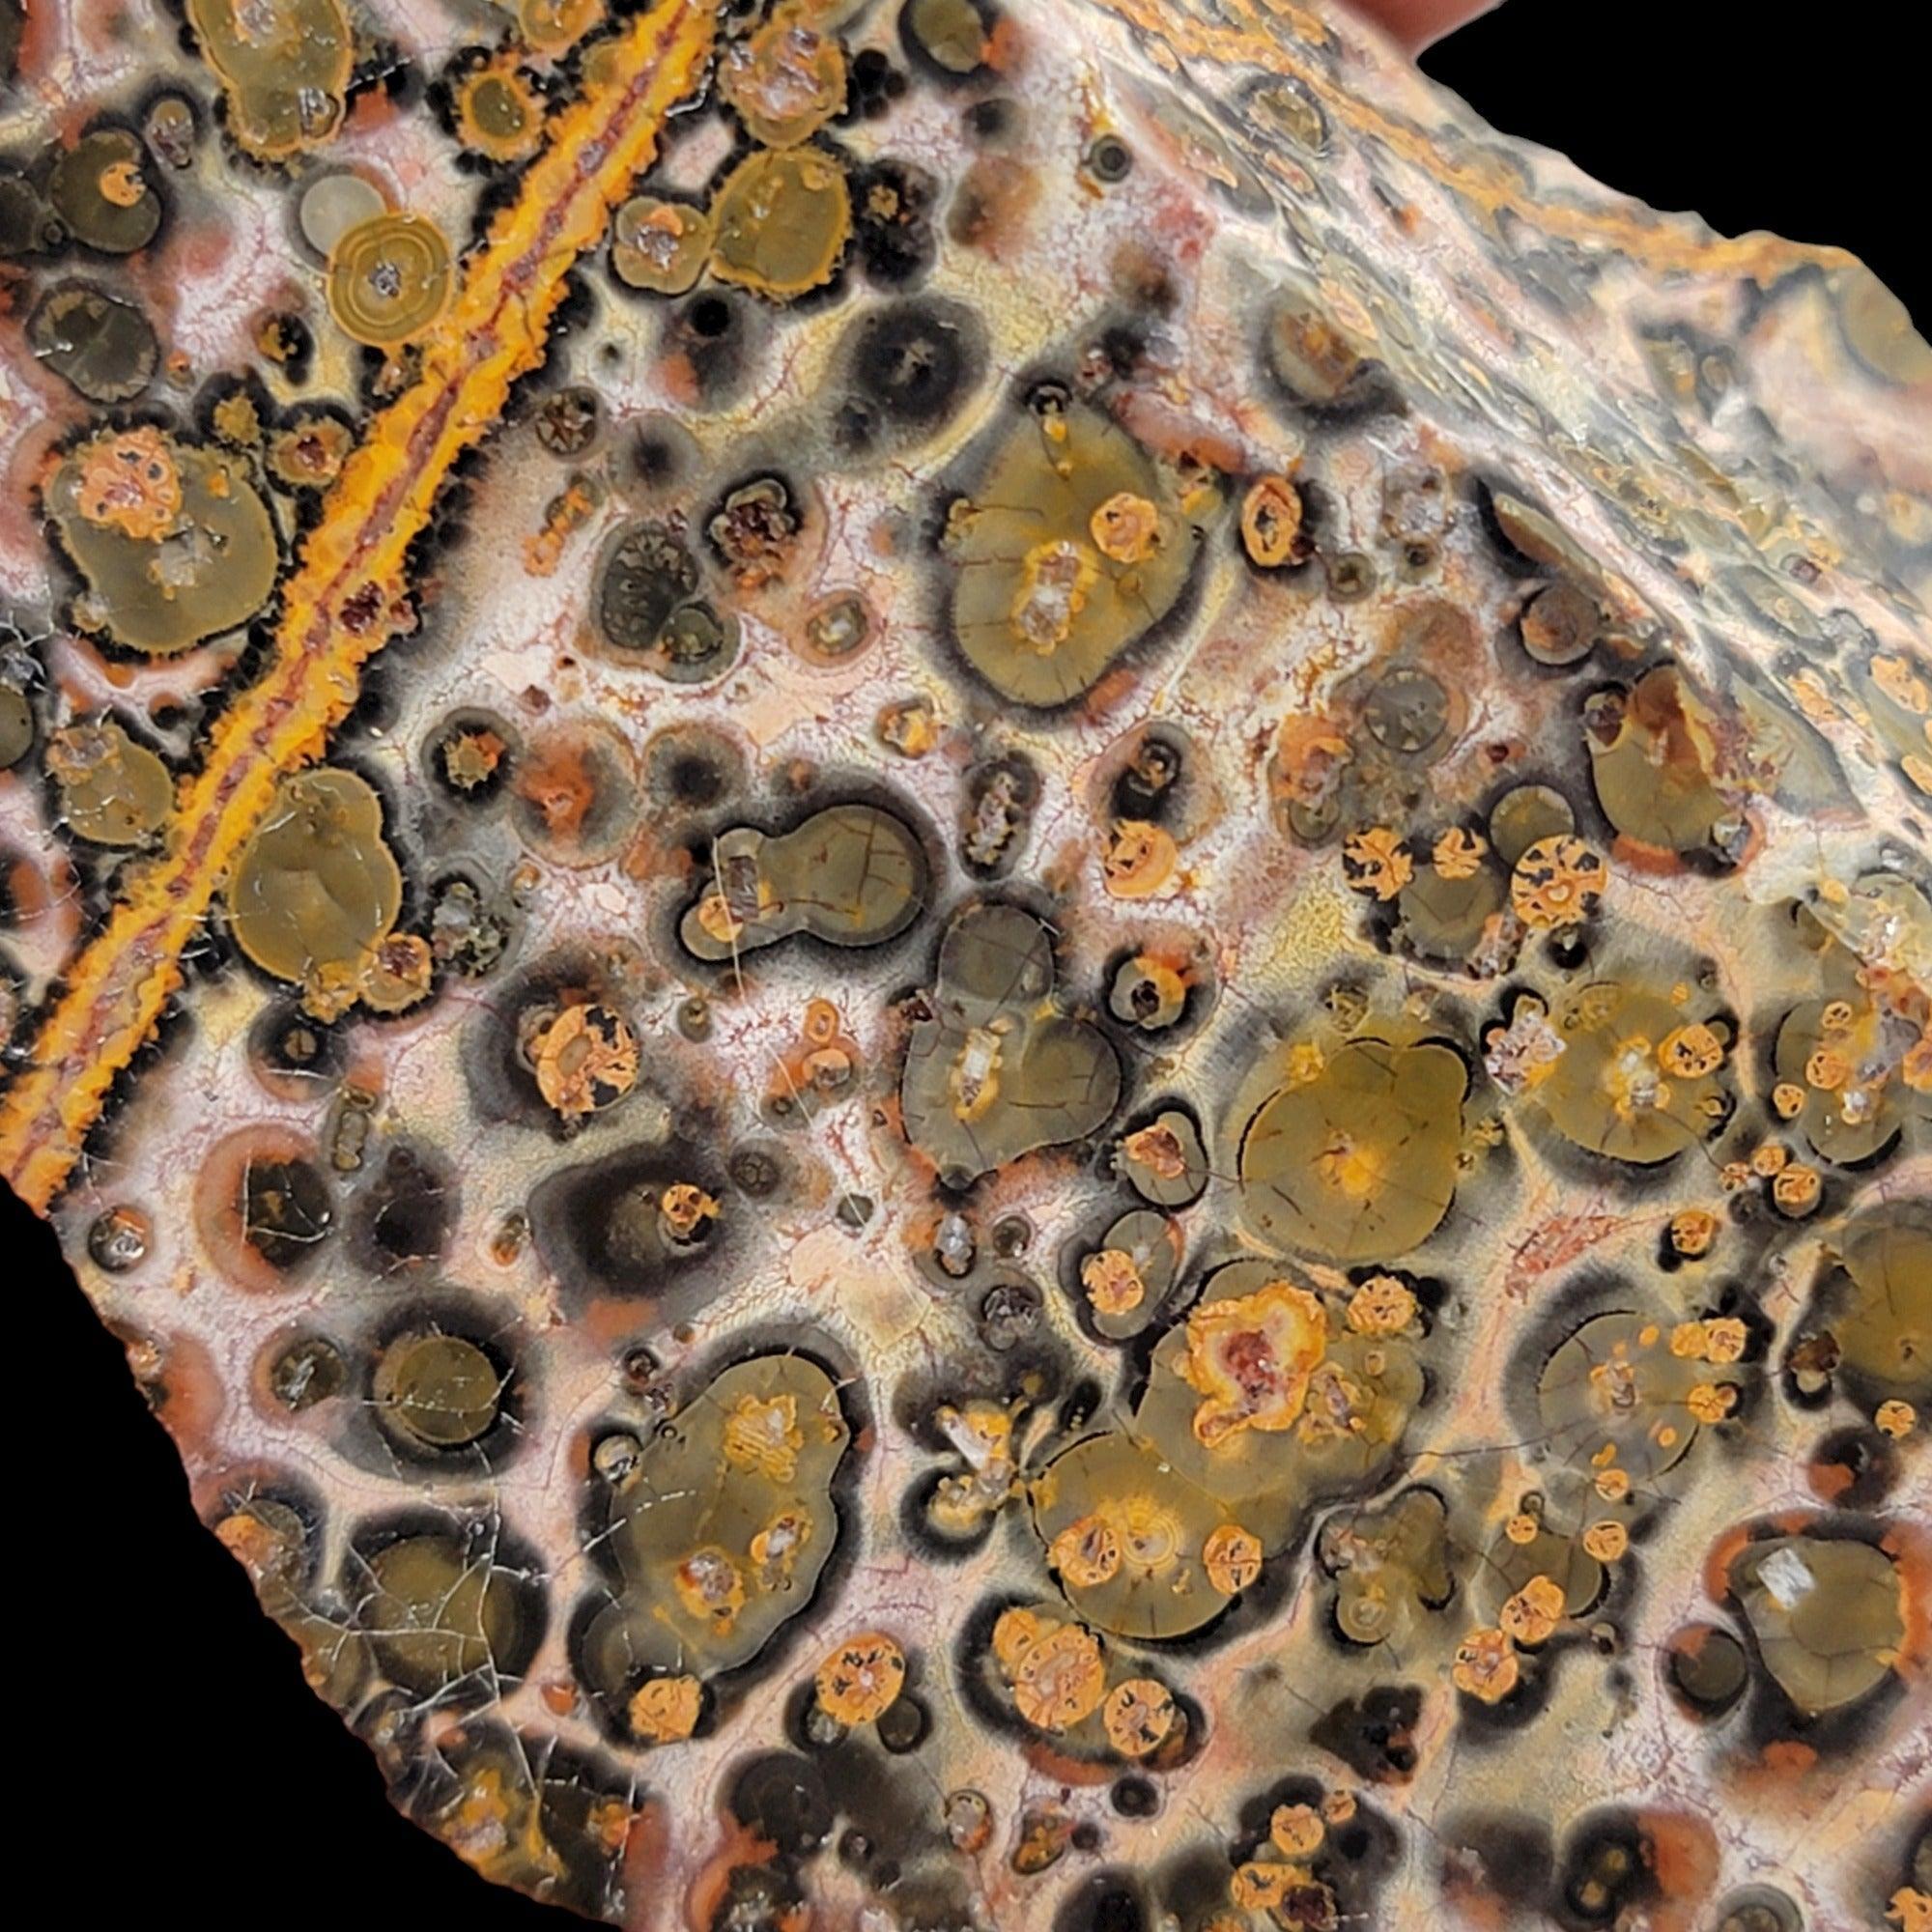 Polished Leopard Skin Rhyolite Display Specimen! - LapidaryCentral